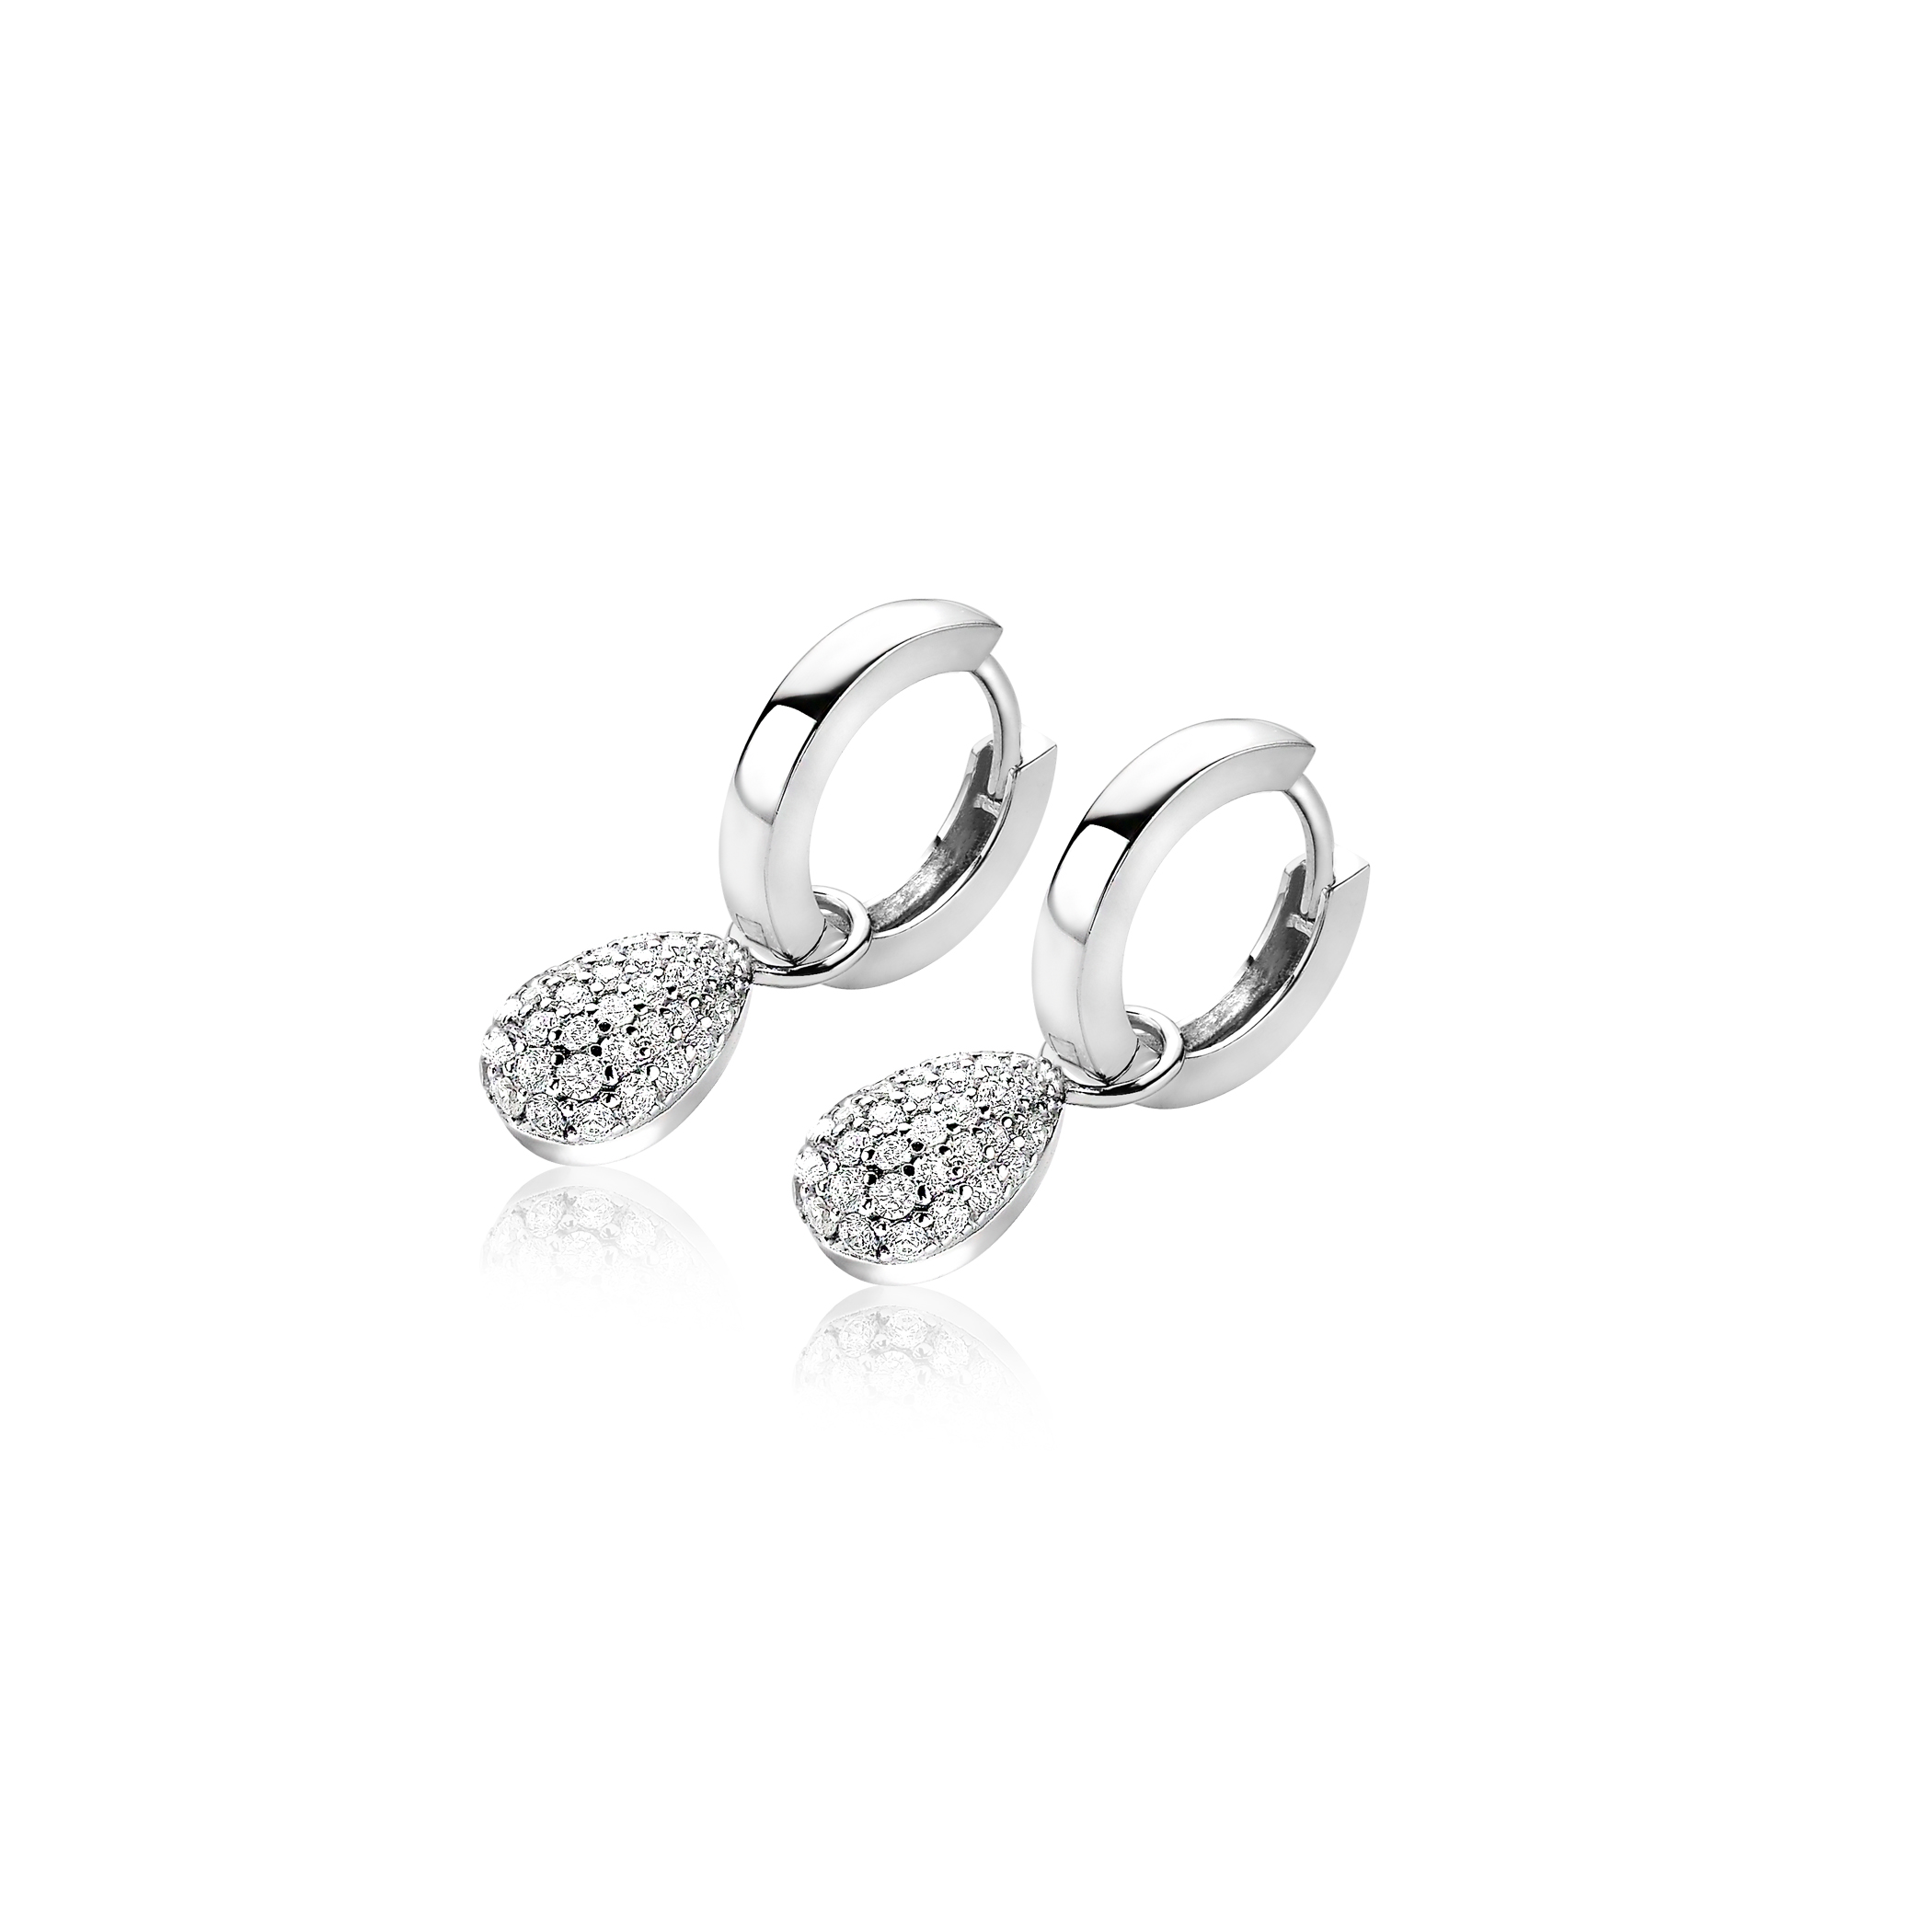 ZINZI Sterling Silver Earrings Pendants Drop ZICH1591 (excl. hoop earrings)